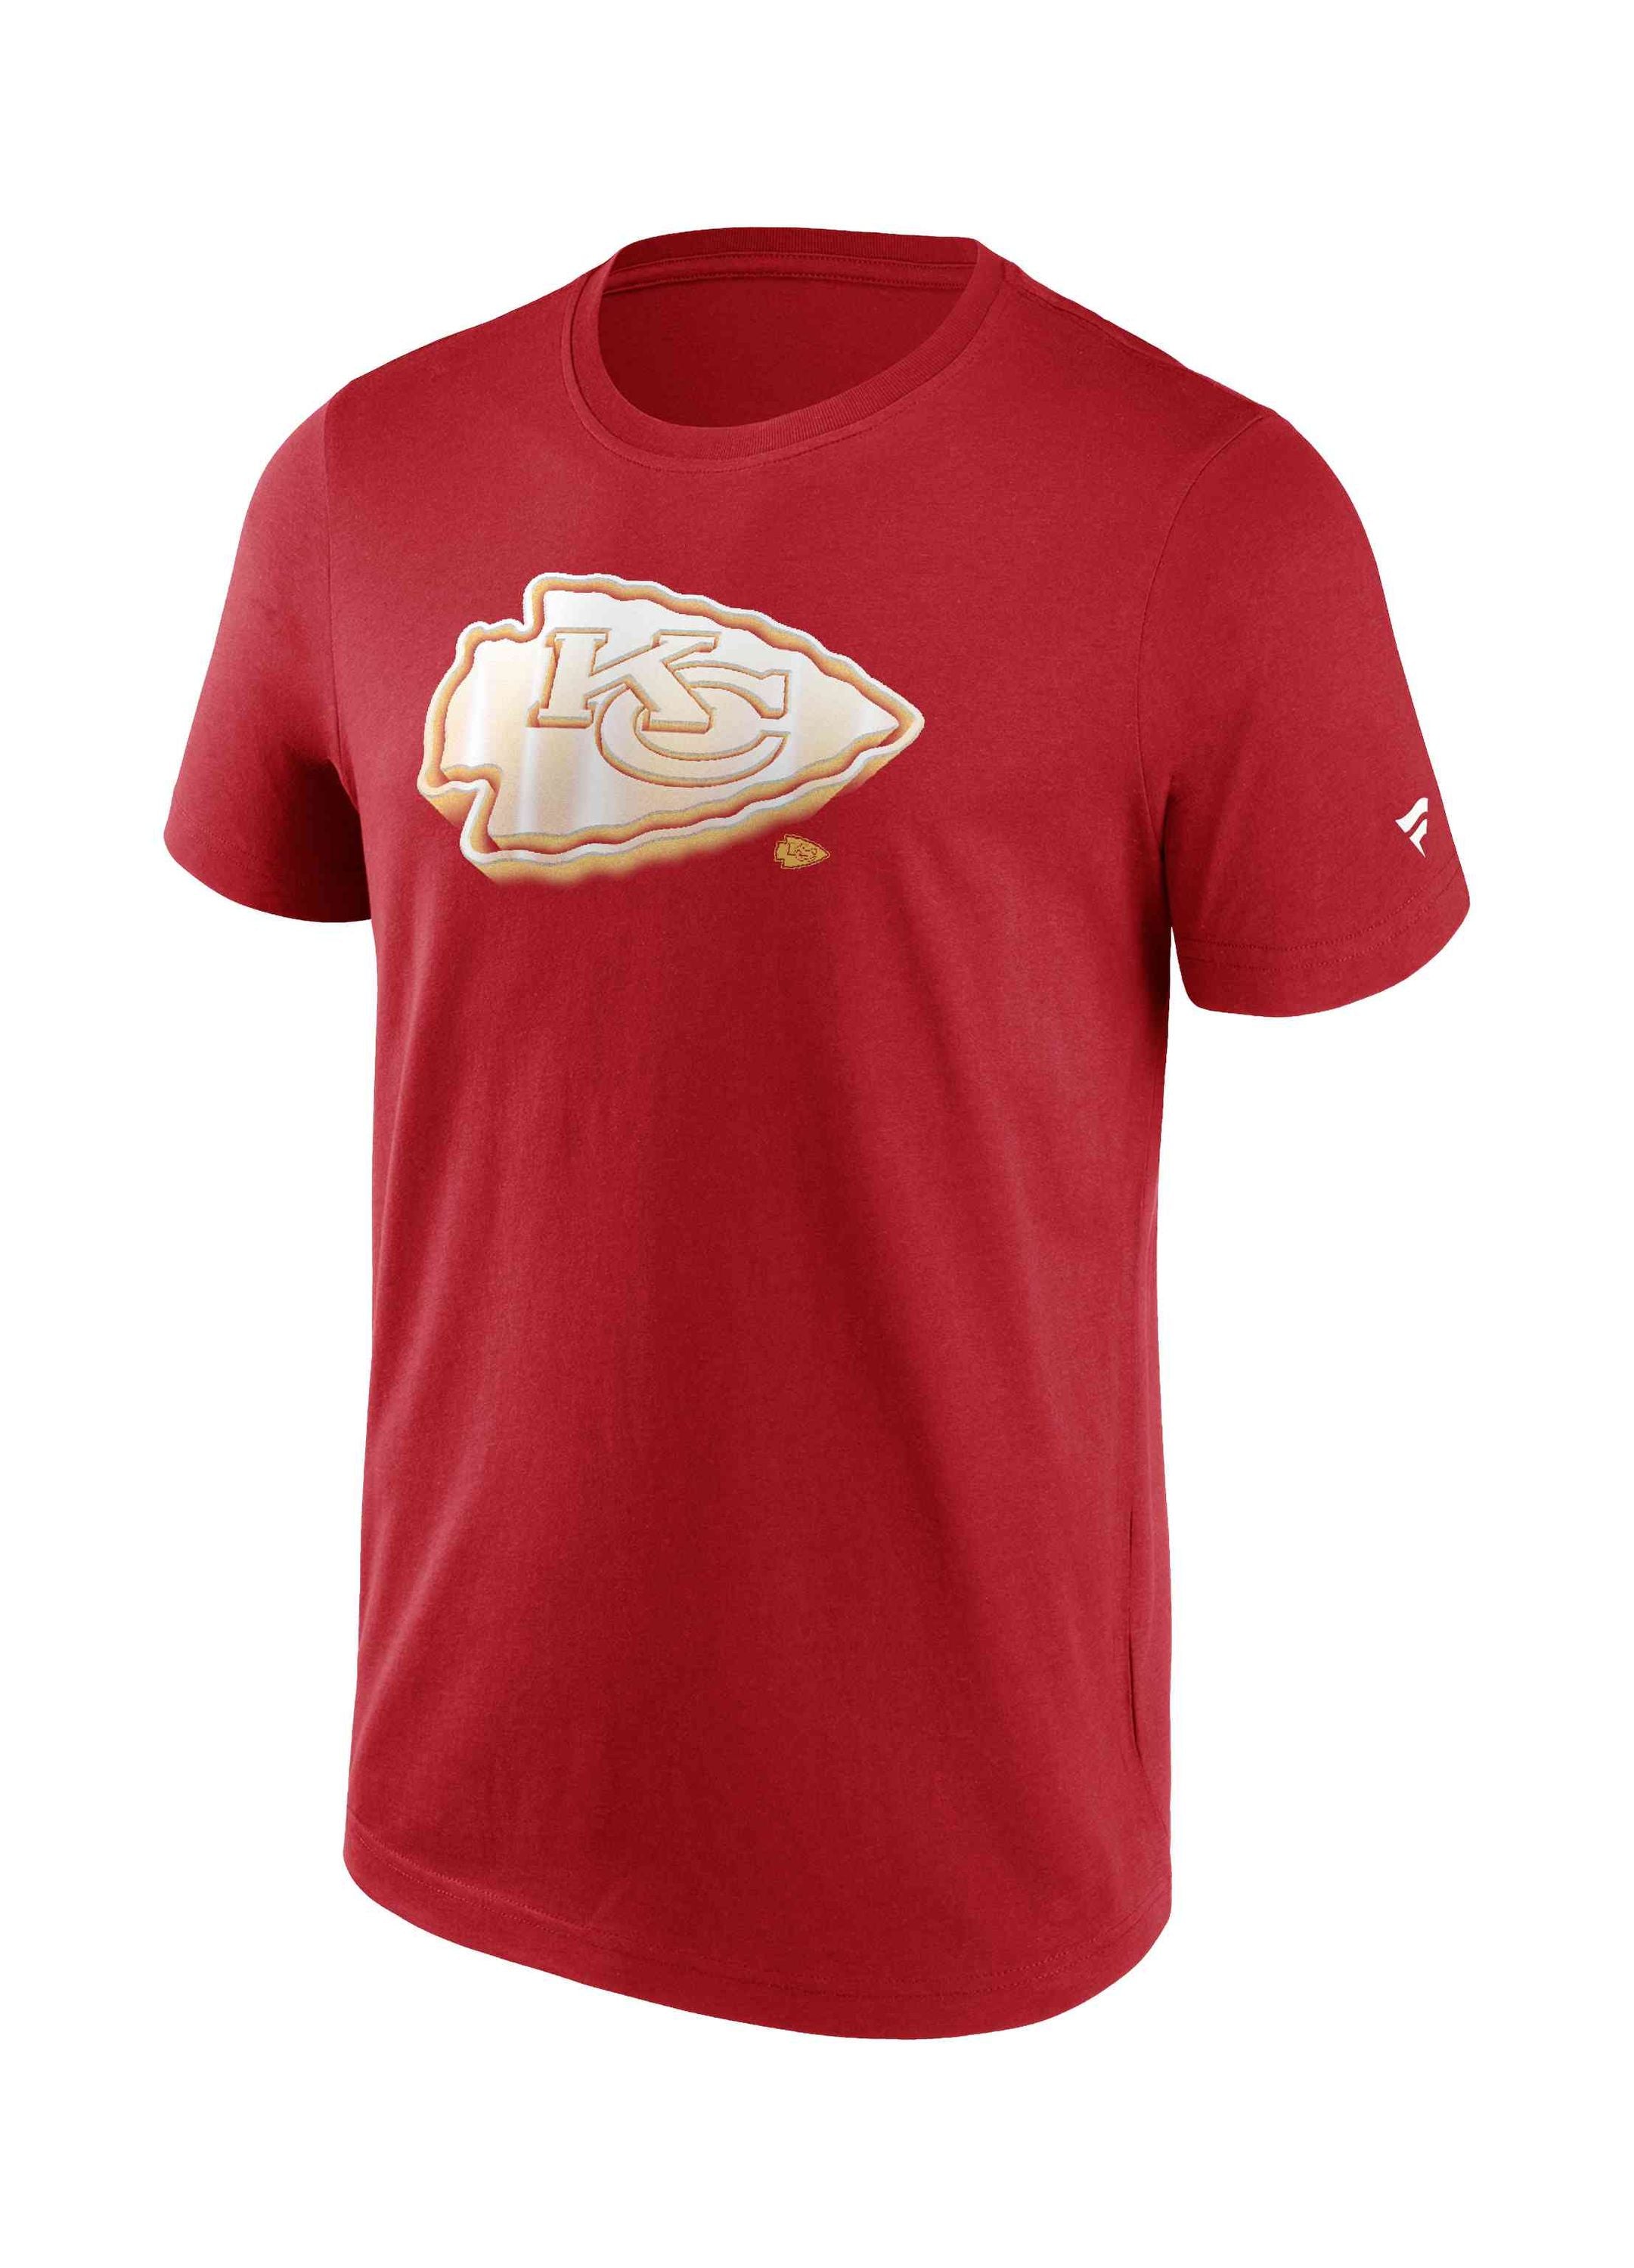 Fanatics - NFL Kansas City Chiefs Chrome Graphic T-Shirt